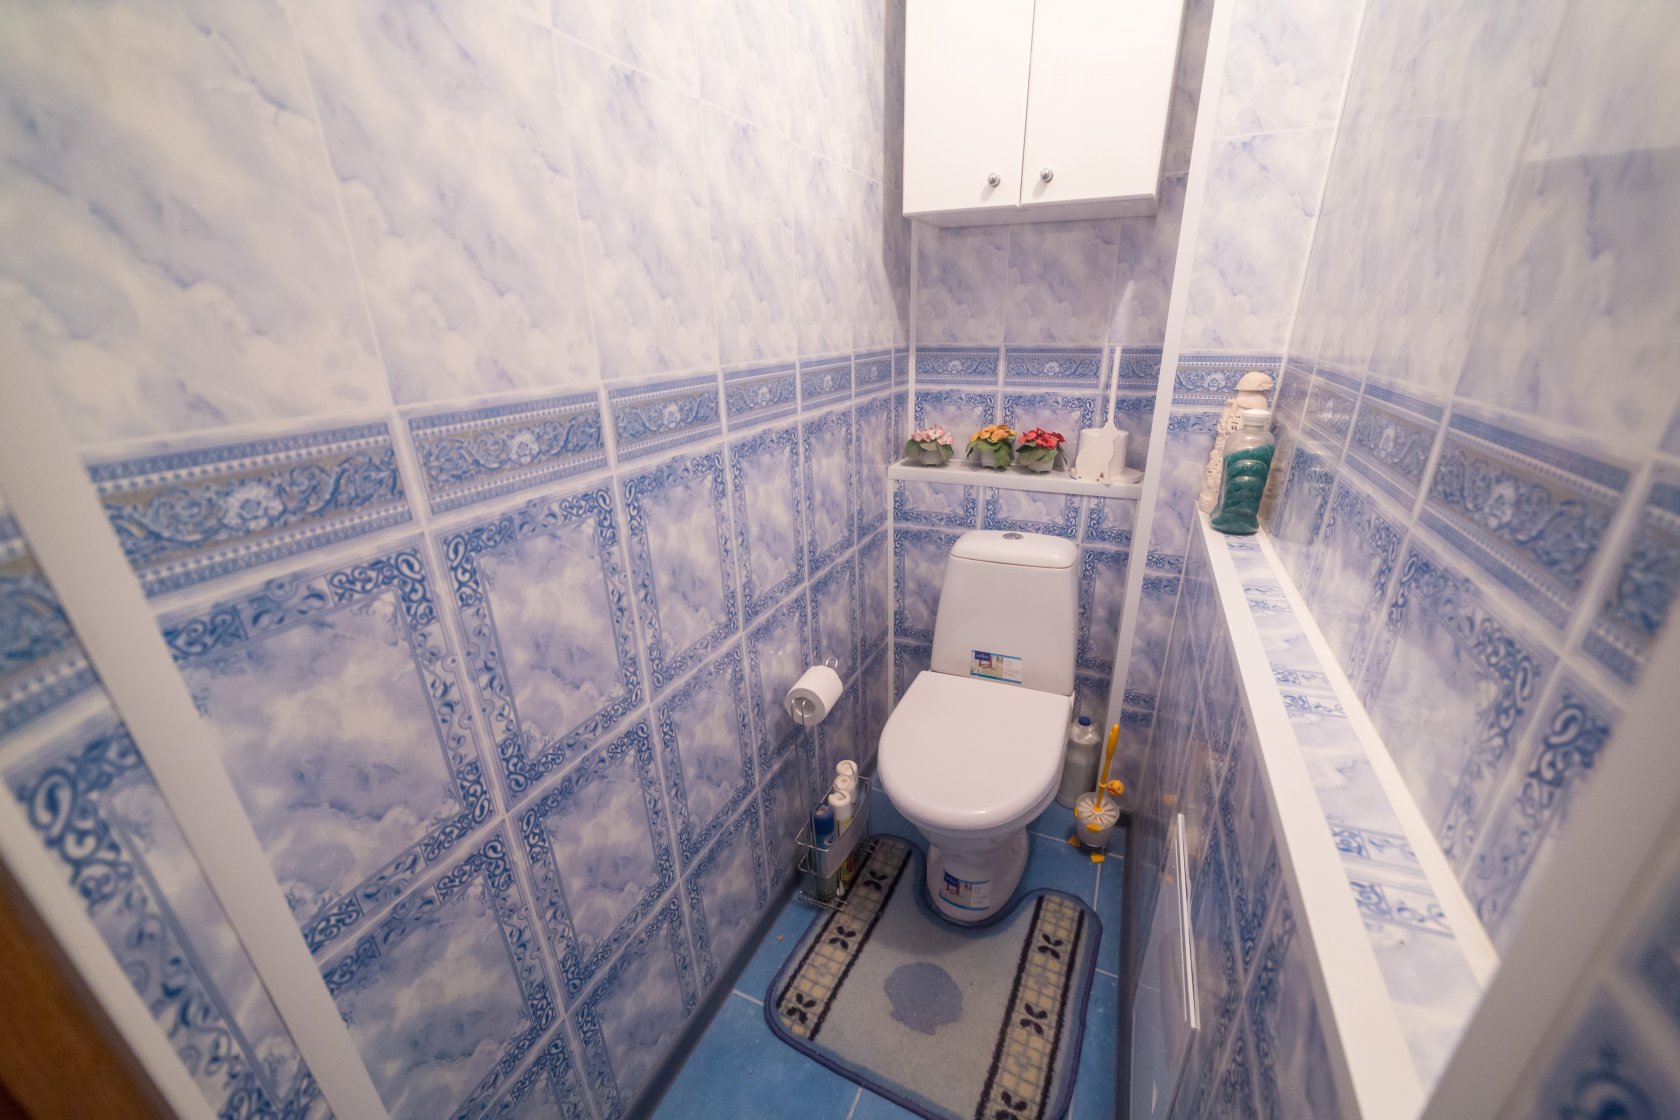 otdelka tualeta plastikovymi panelyami1 - Отделка туалета пластиковыми панелями